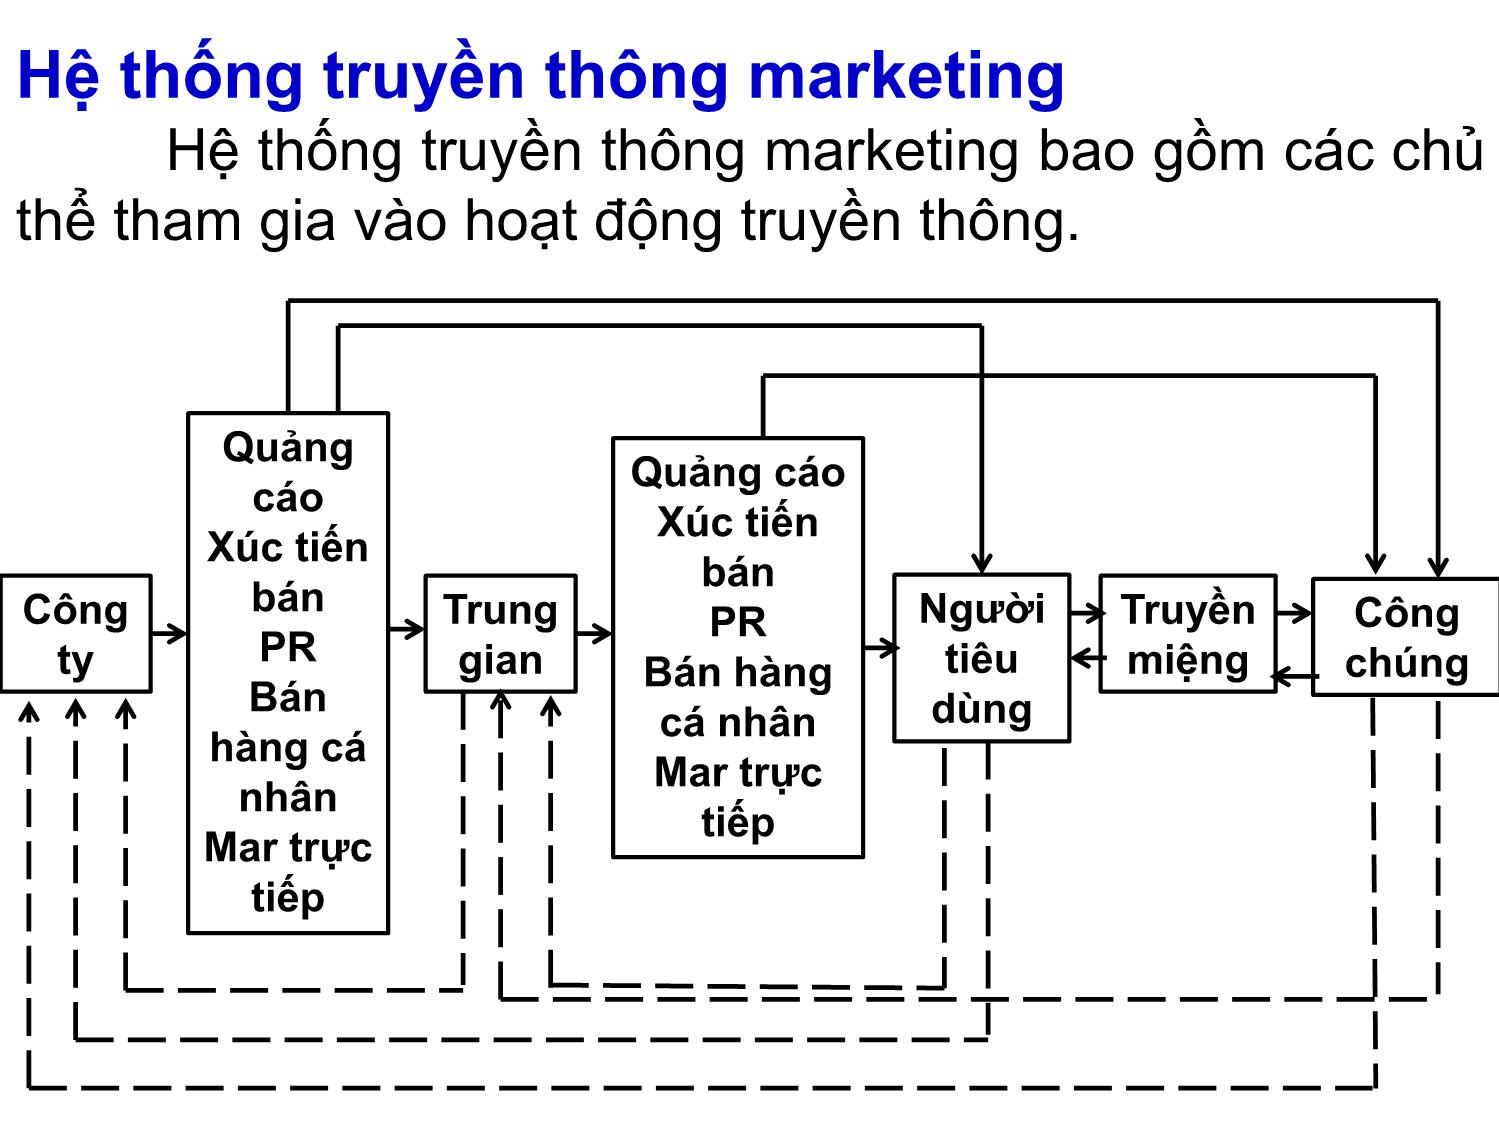 Bài giảng Quản trị marketing - Chương 9: Quản trị truyền thông marketing tích hợp (Integrated Marketing Communications - IMC) - Nguyễn Thị Phương Dung trang 7